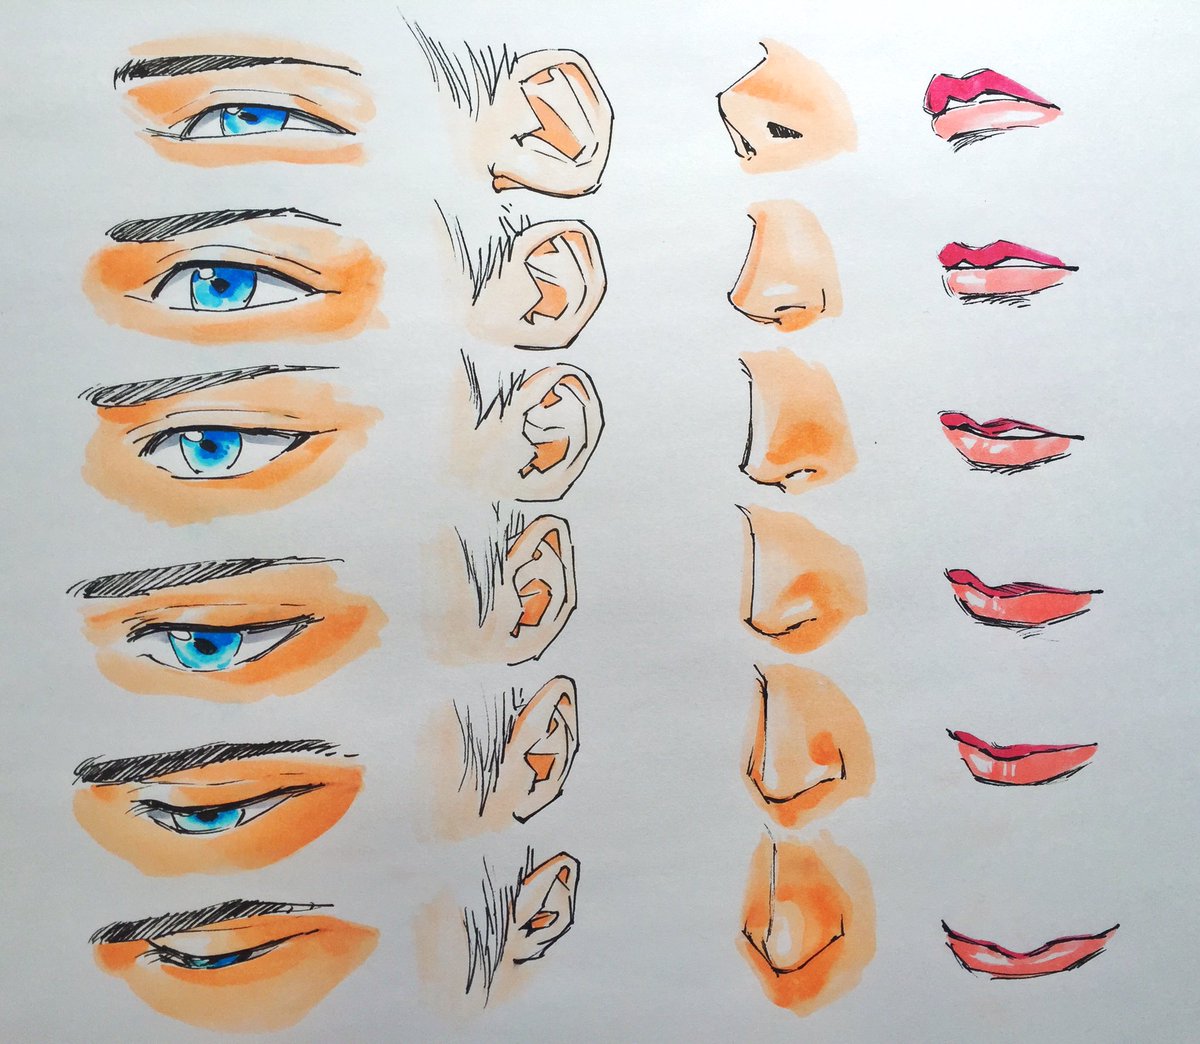 吉村拓也 イラスト講座 در توییتر イケメン顔の描き方 角度別 顔のパーツ表